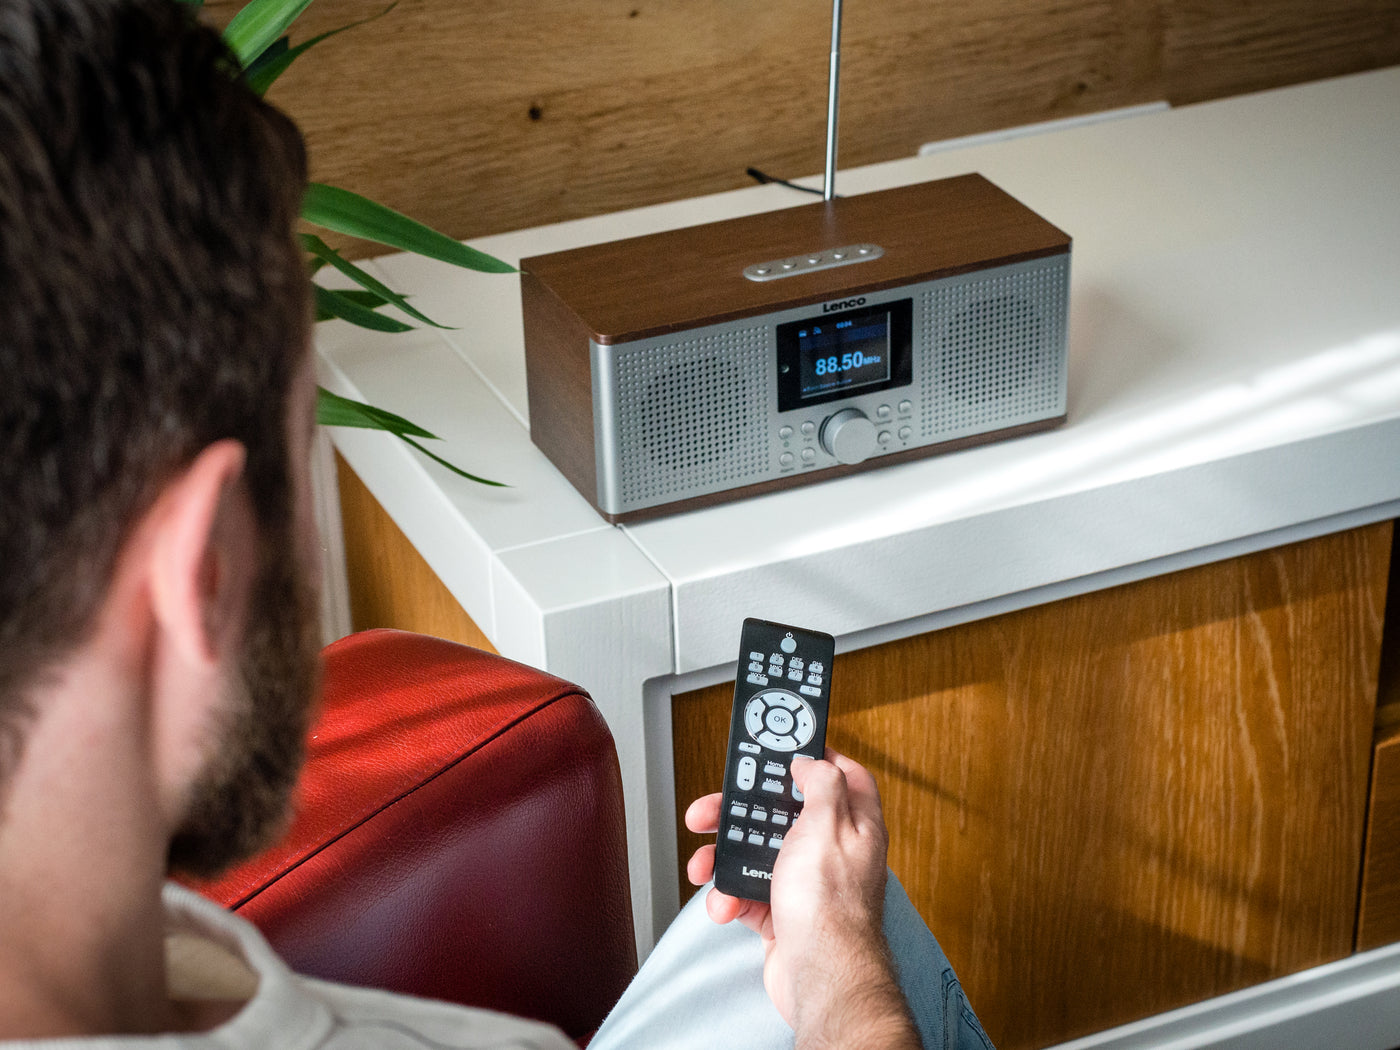 LENCO DIR-170WA Inteligentne radio internetowe z DAB+, FM i Bluetooth® - Drewno